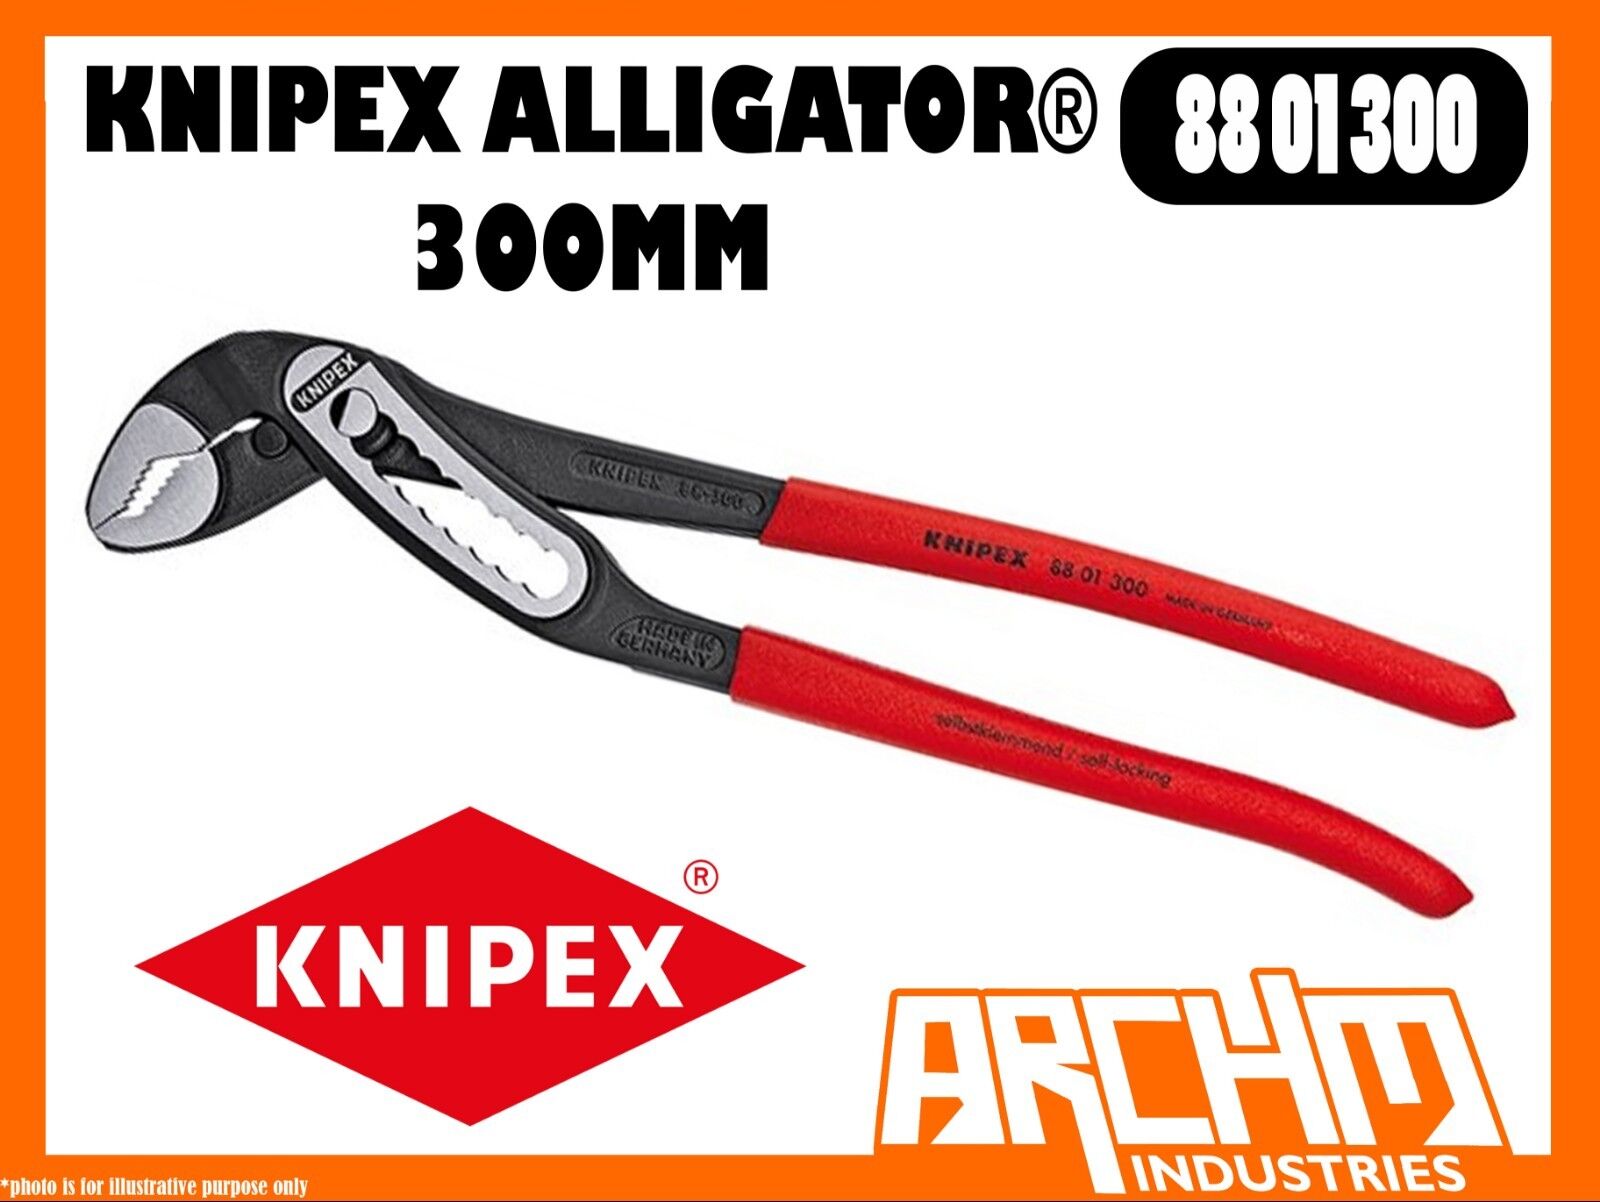 Mus Laboratorium gear KNIPEX 8801300 - ALLIGATOR® - 300MM - WATERPUMP PLIERS - GRIPPING SELF  LOCKING | eBay